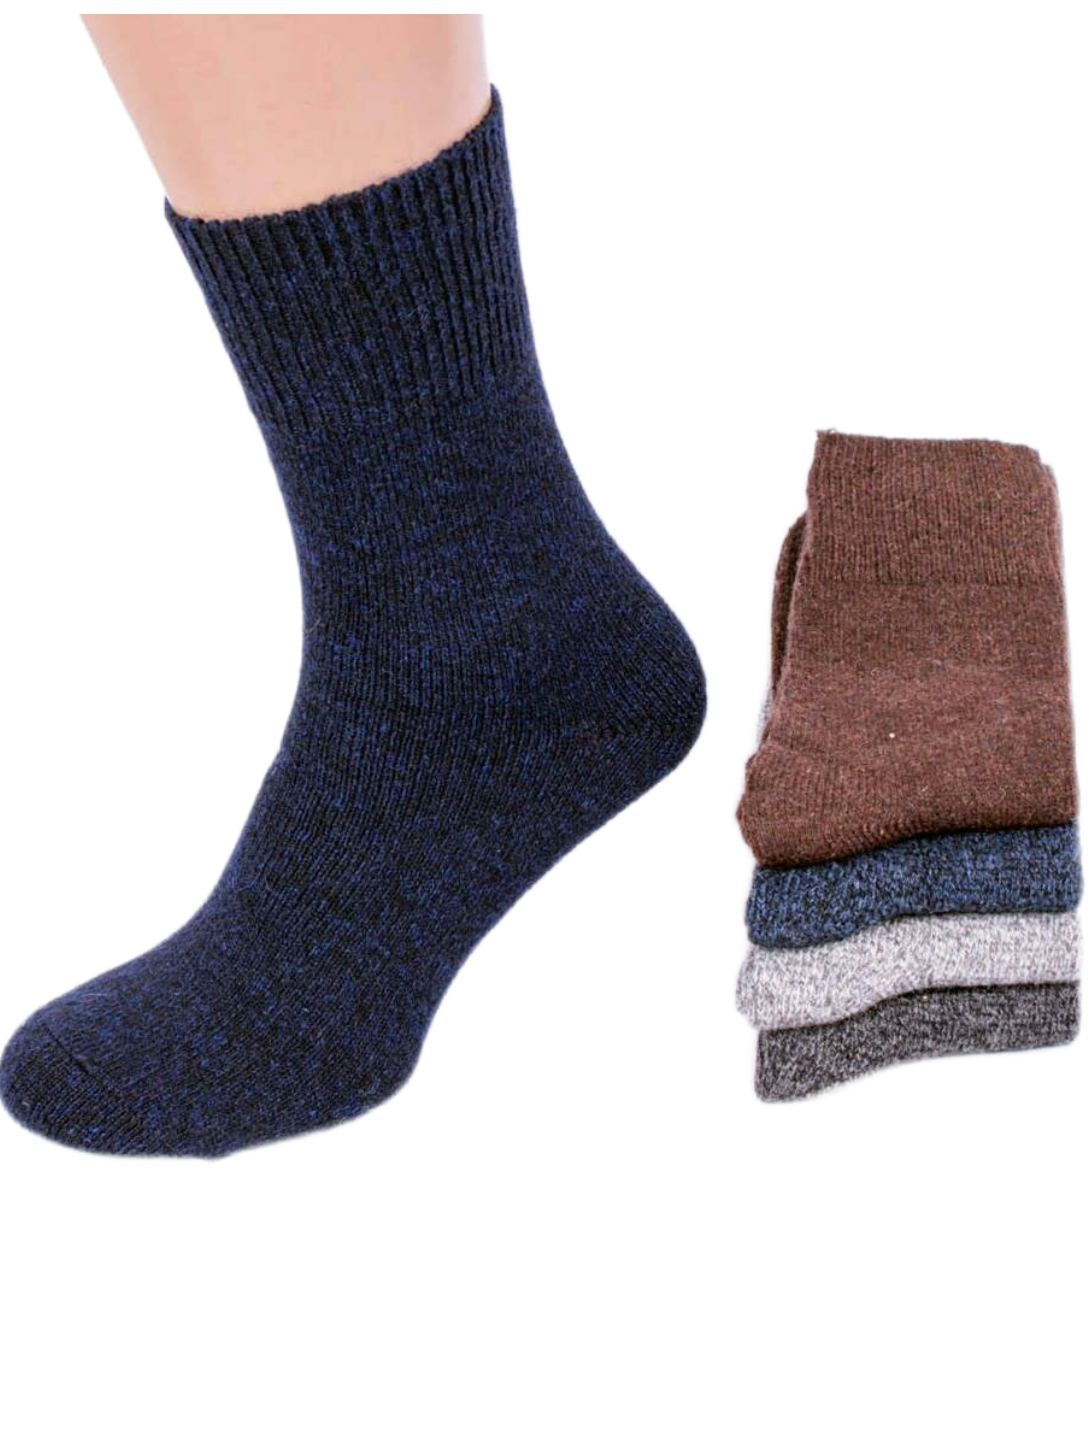 Зимние носки мужские, теплые, Носки зимние мужские, термоноски, зимние .